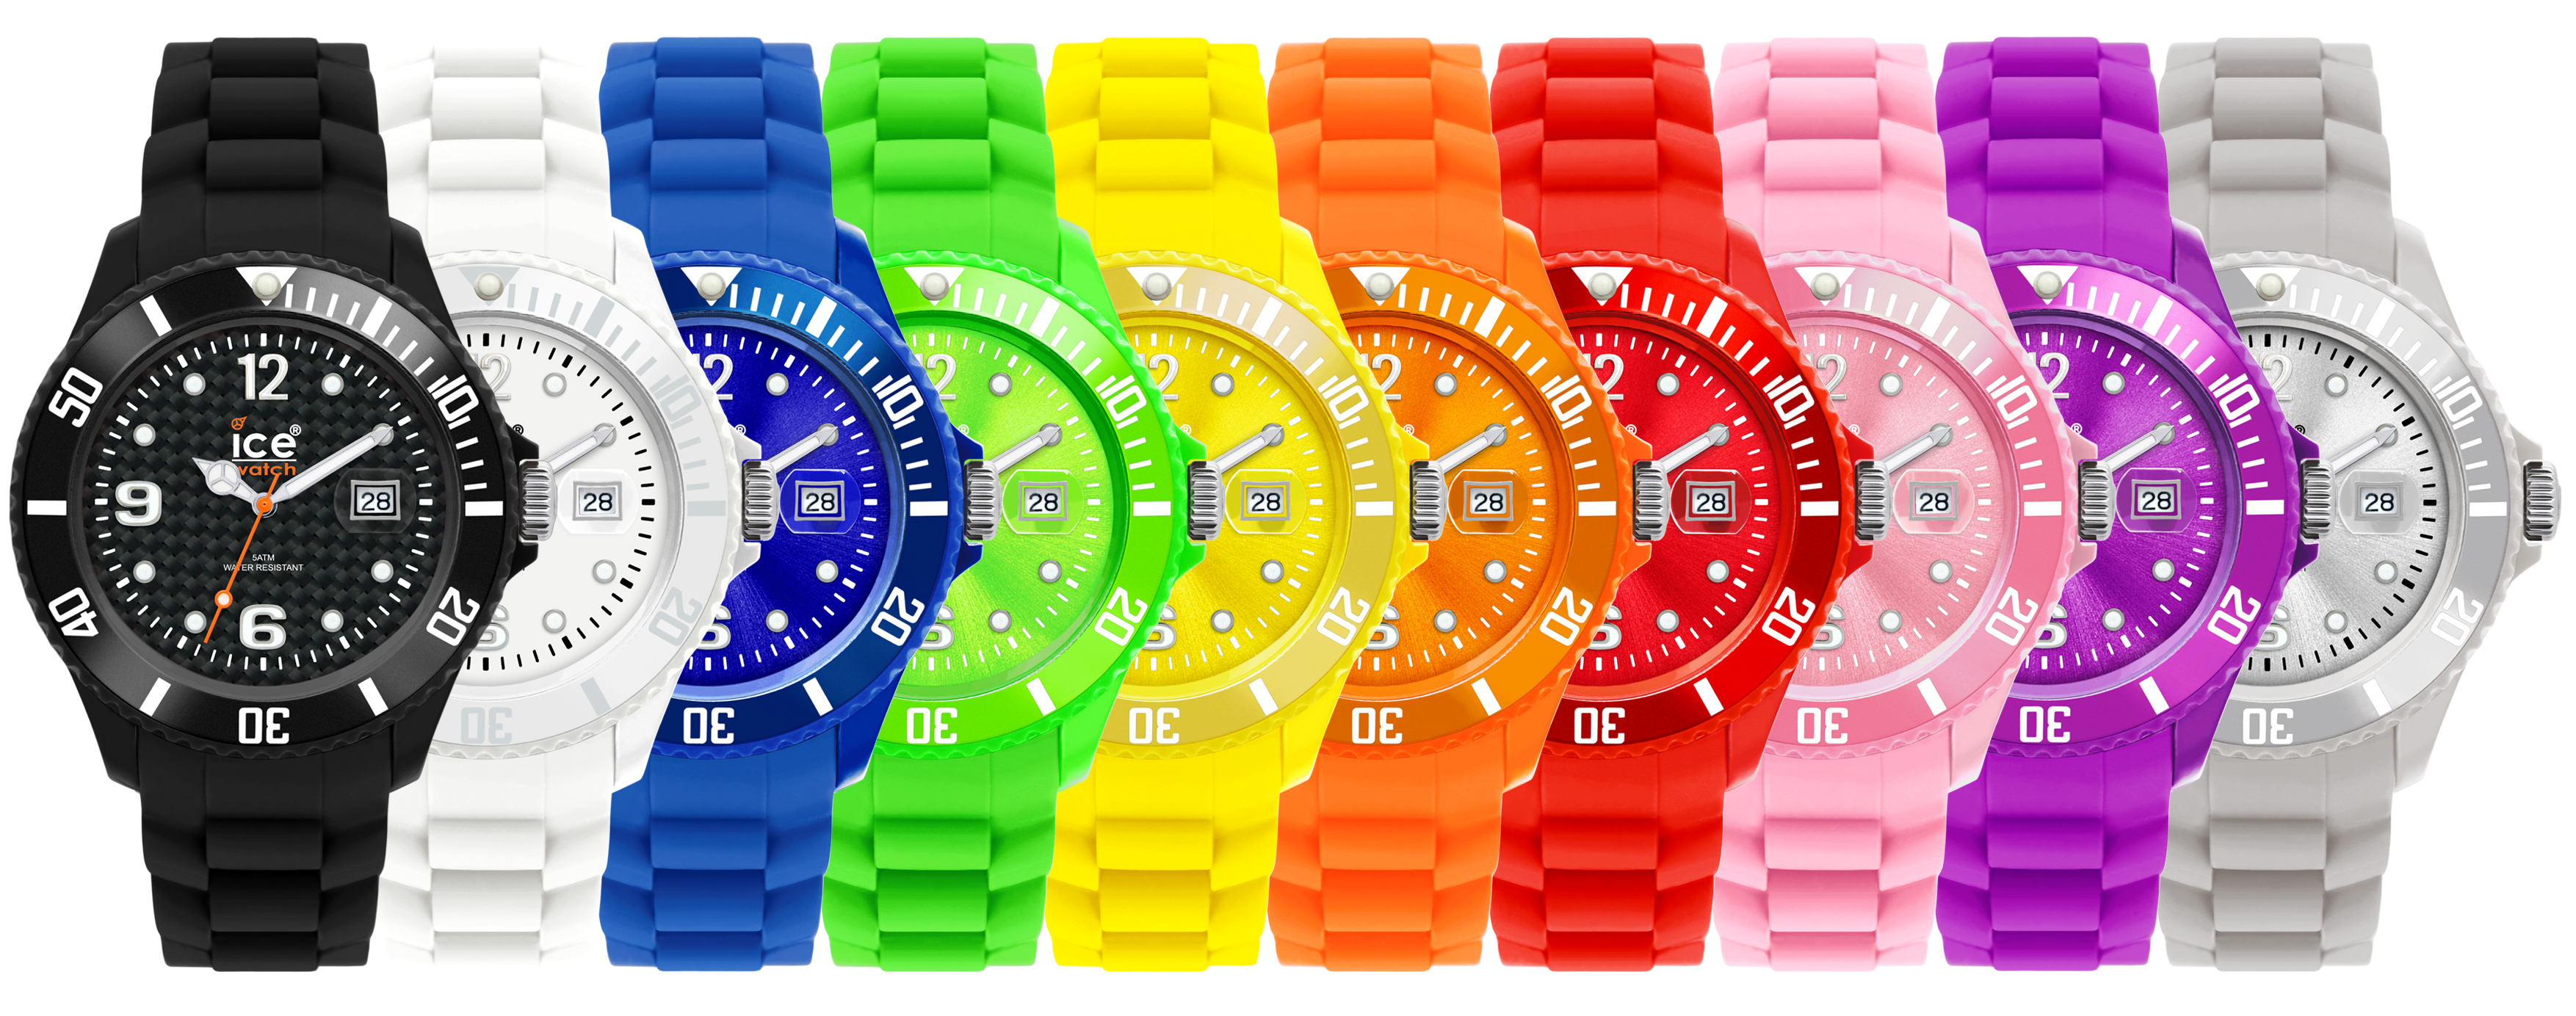 Сделай ярче в час. Разные часы. Часы цветные. Часы Ice watch. Часы с разными цветами.